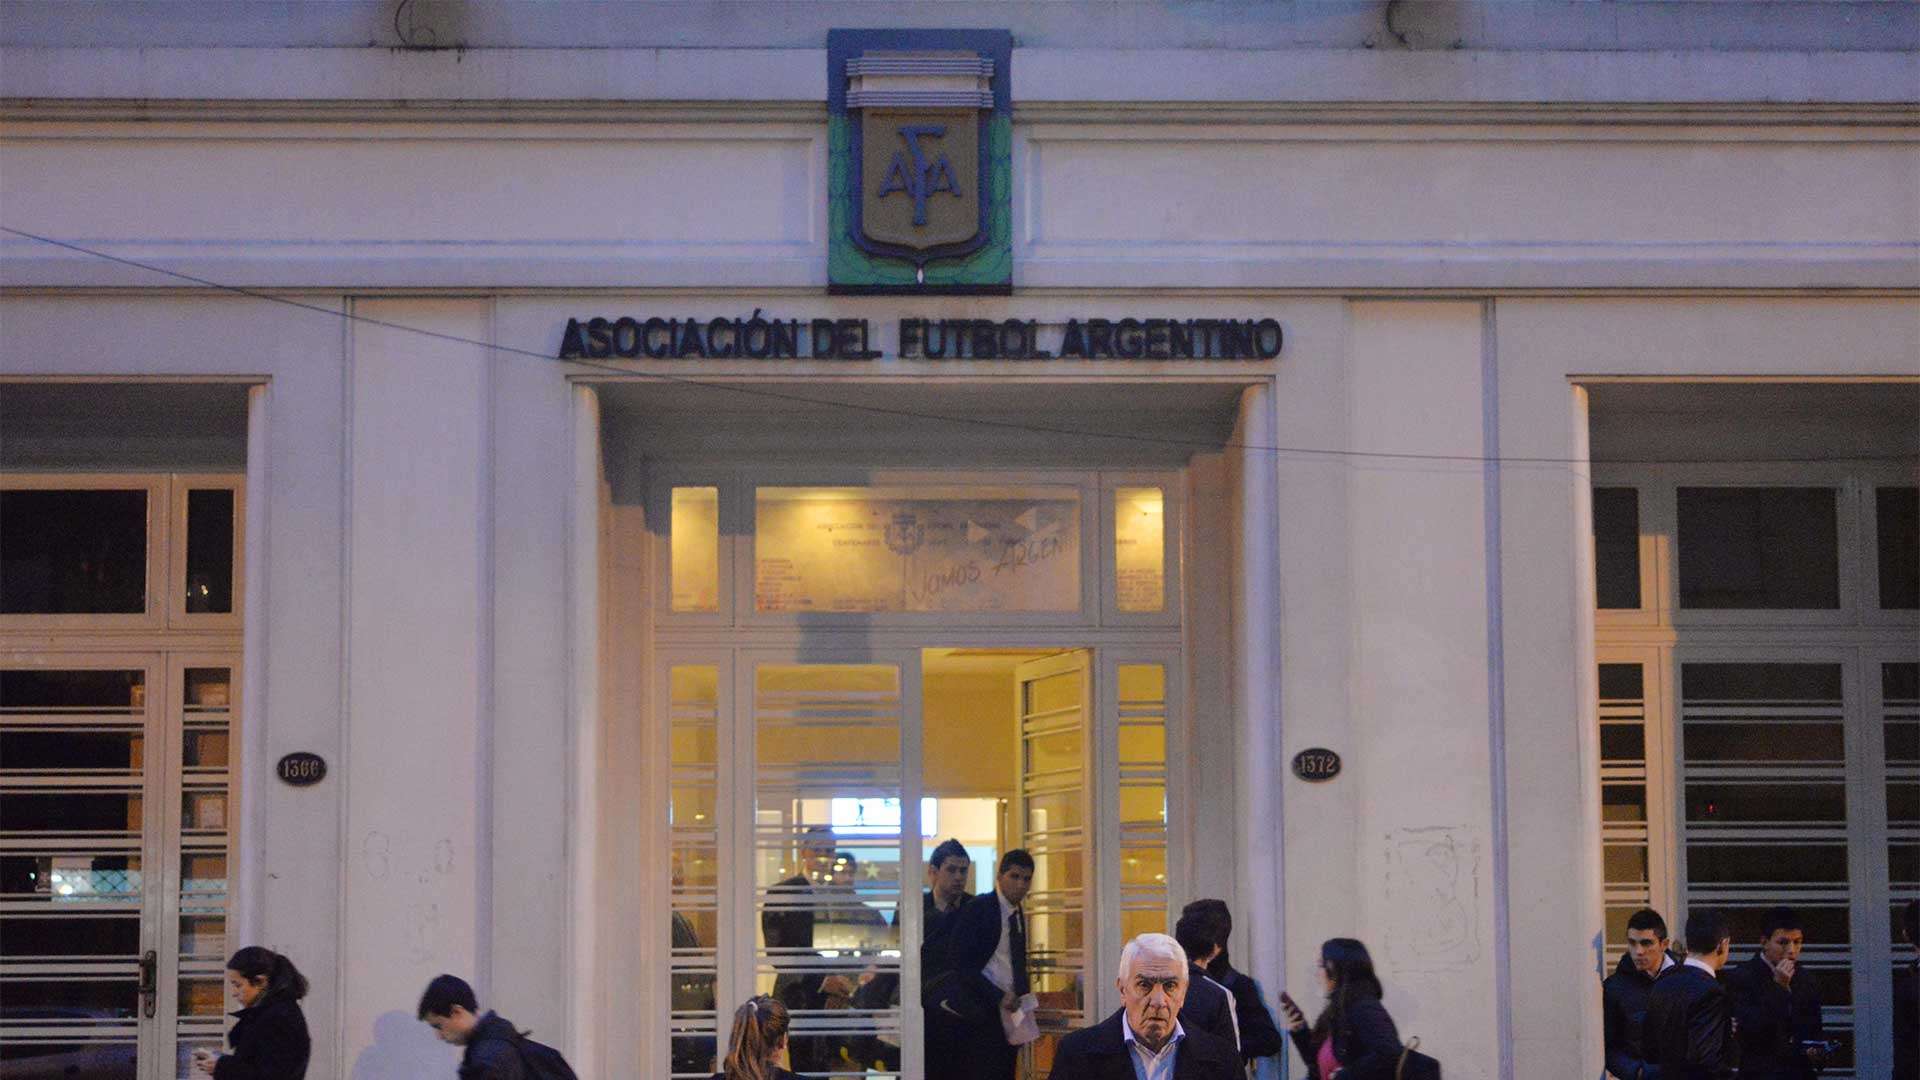 Edificio AFA Asociacion de futbol argentino